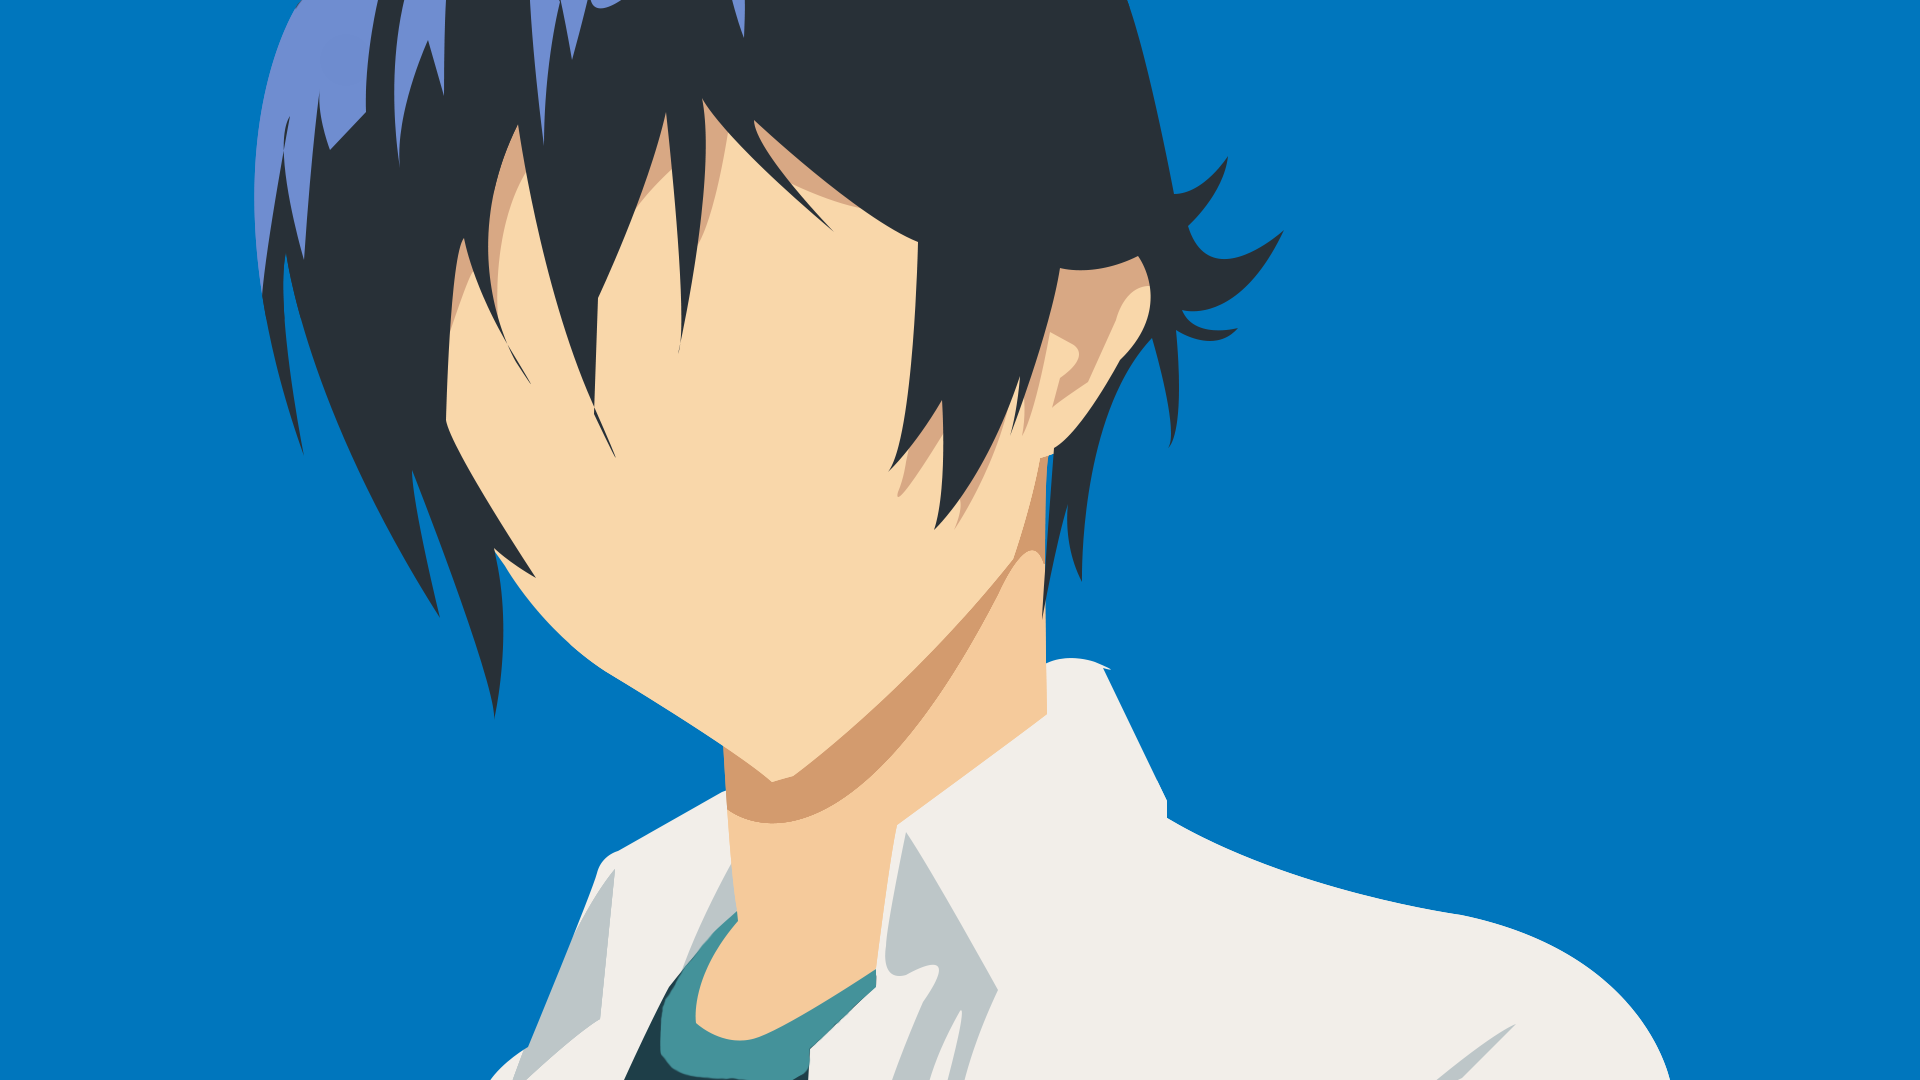 Anime 1920x1080 anime Bakuman anime boys dark hair simple background blue background